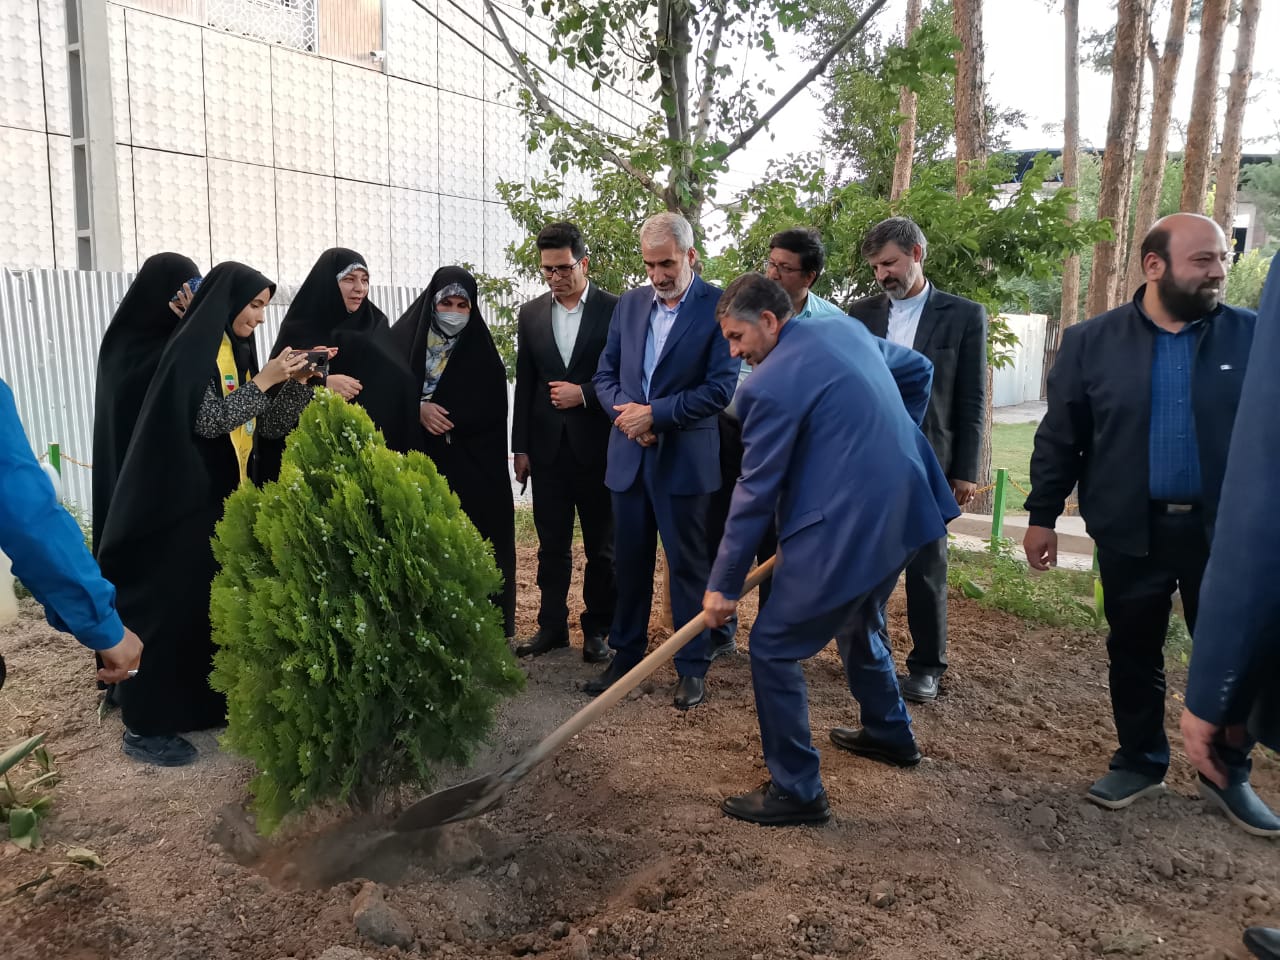 غرس دو نهال به نام دختران ایران در بوستان نجمه قم با حضور وزیر آموزش و پرورش